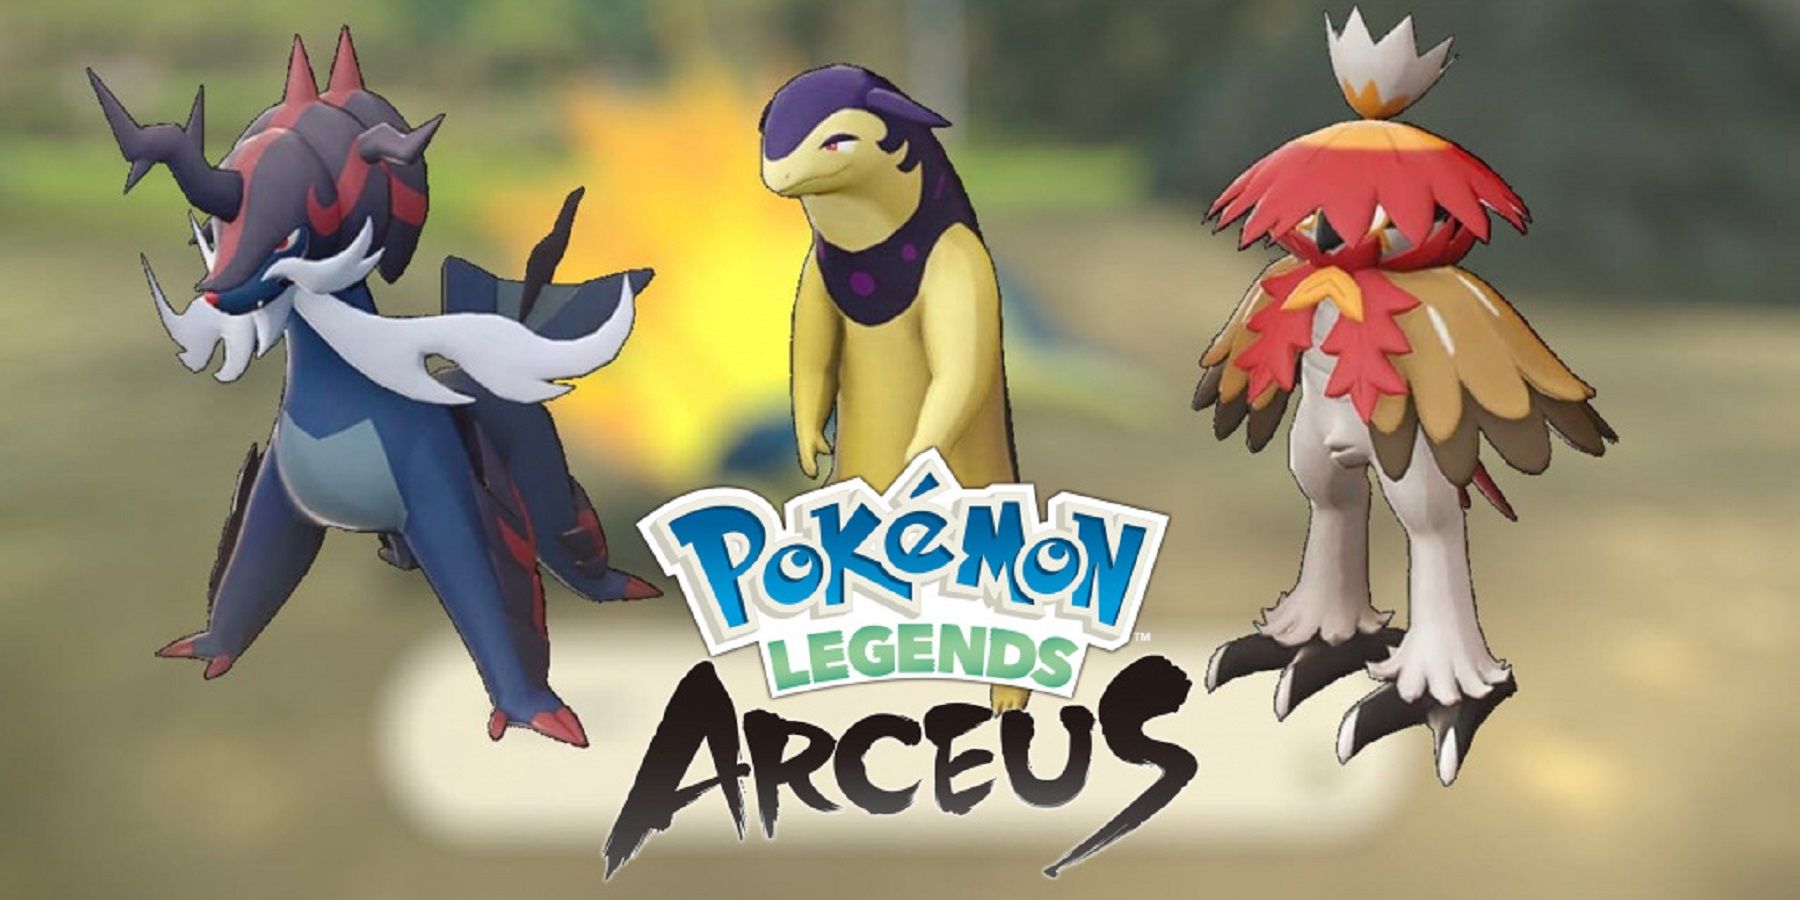 Pokemon Efsaneleri: Arceus – Hisuian başlangıçların son evrimleri belirli NPC’lere başvurabilir